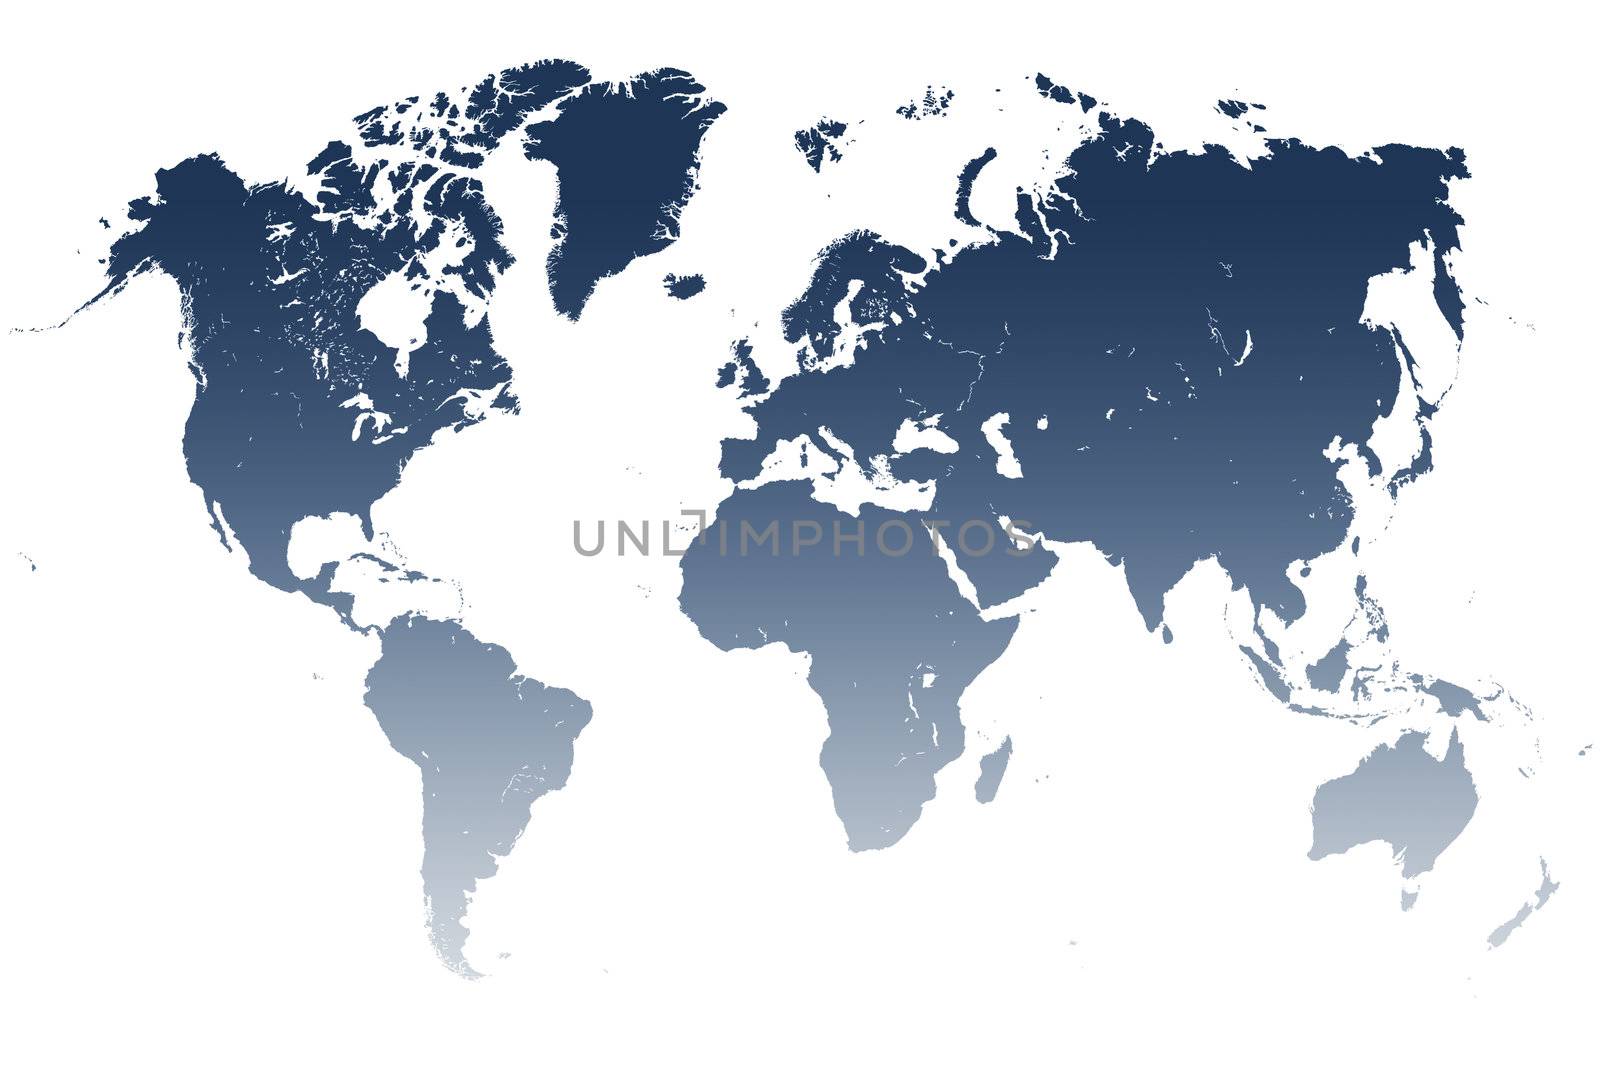 blue World Map Illustration on white background